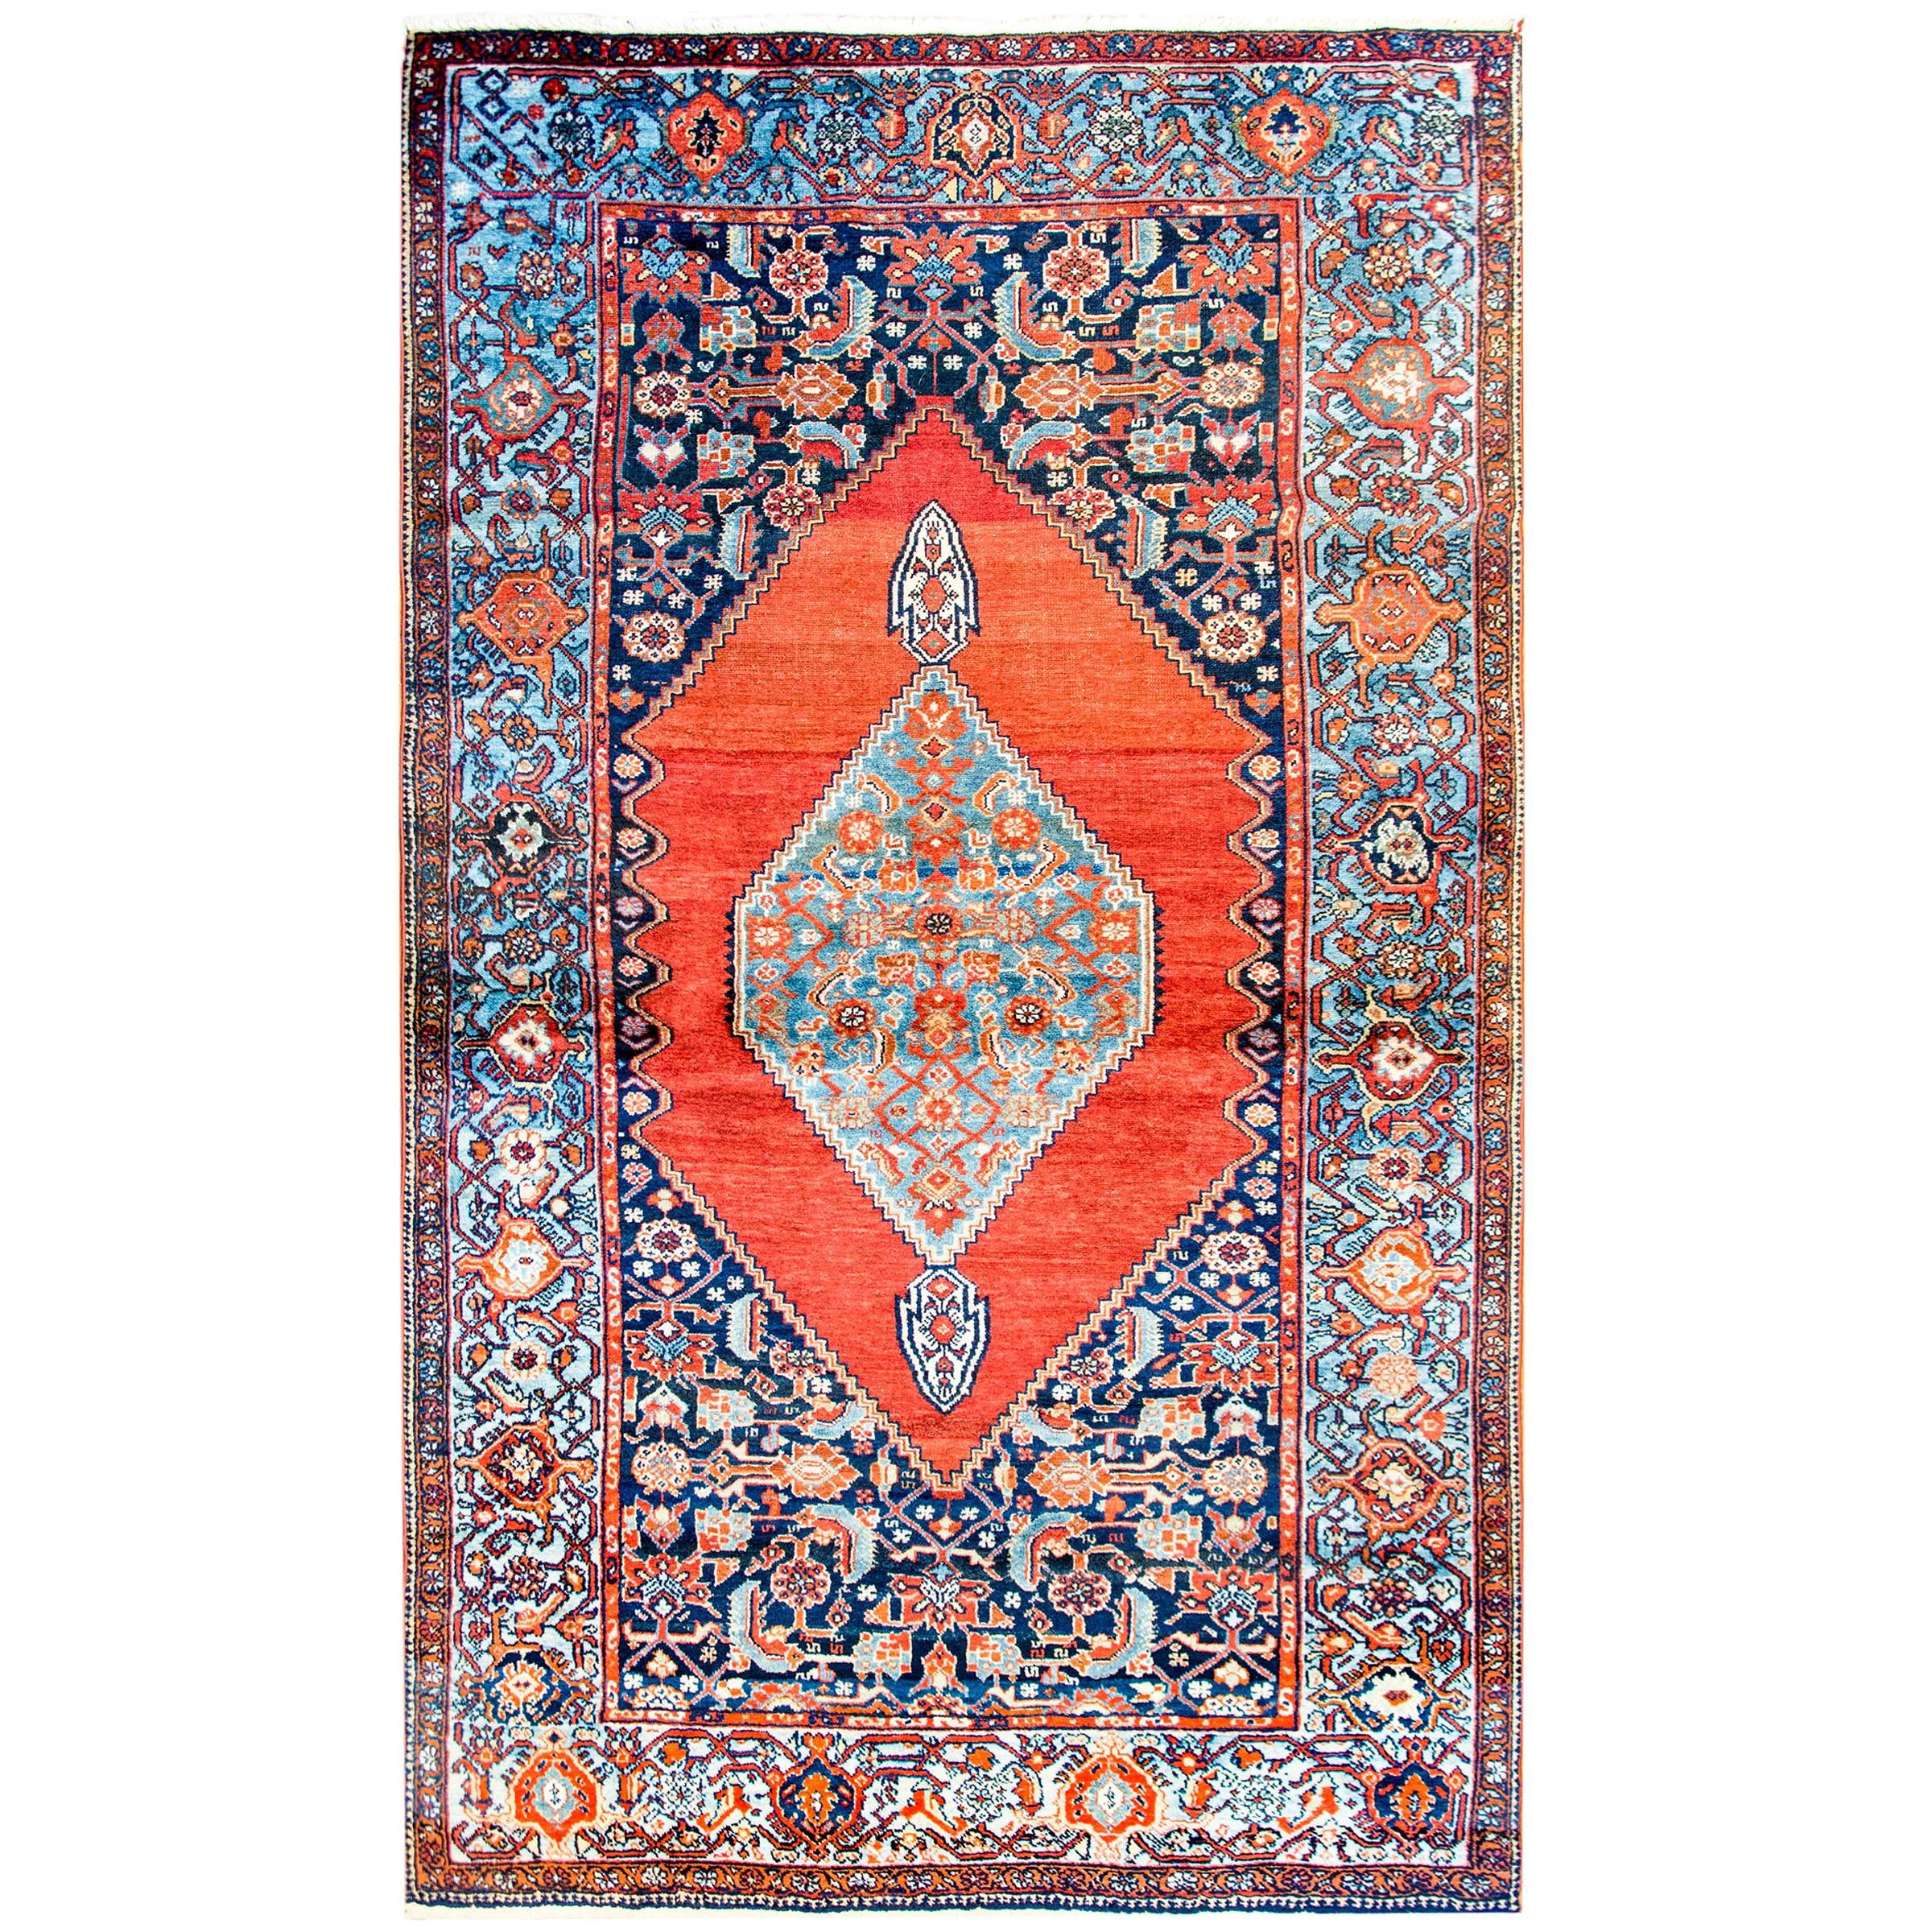 Seneh-Teppich aus dem frühen 20. Jahrhundert